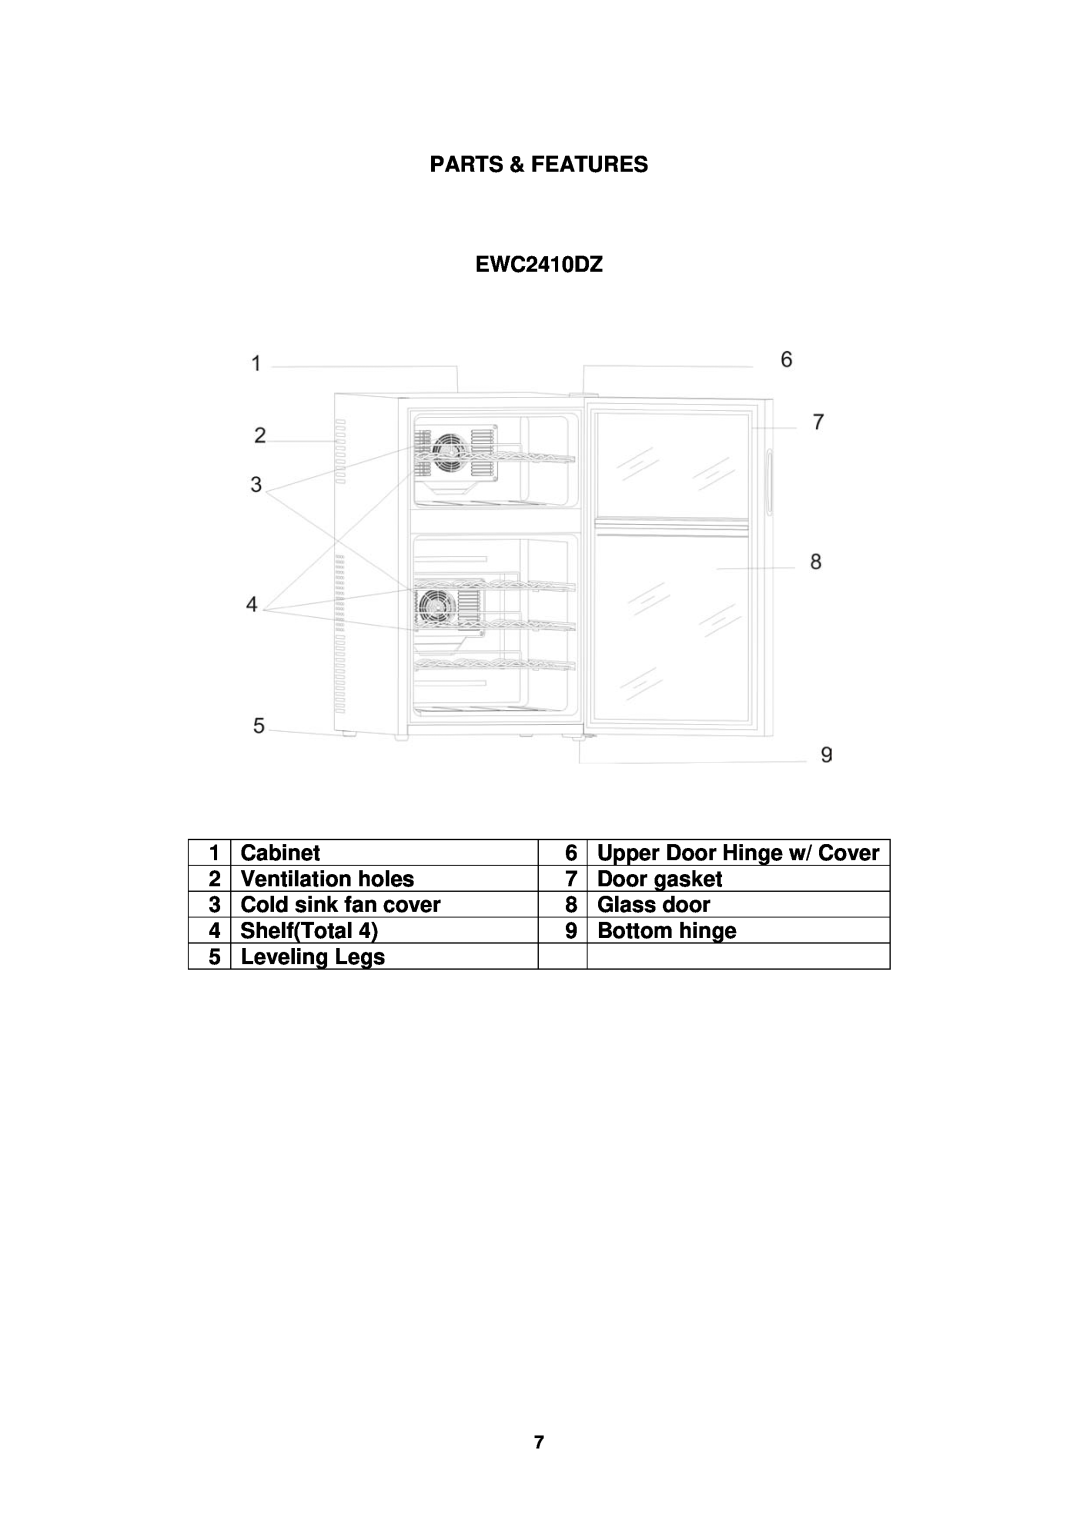 Avanti PARTS & FEATURES EWC2410DZ, Cabinet, Upper Door Hinge w/ Cover, Ventilation holes, Door gasket, Glass door 